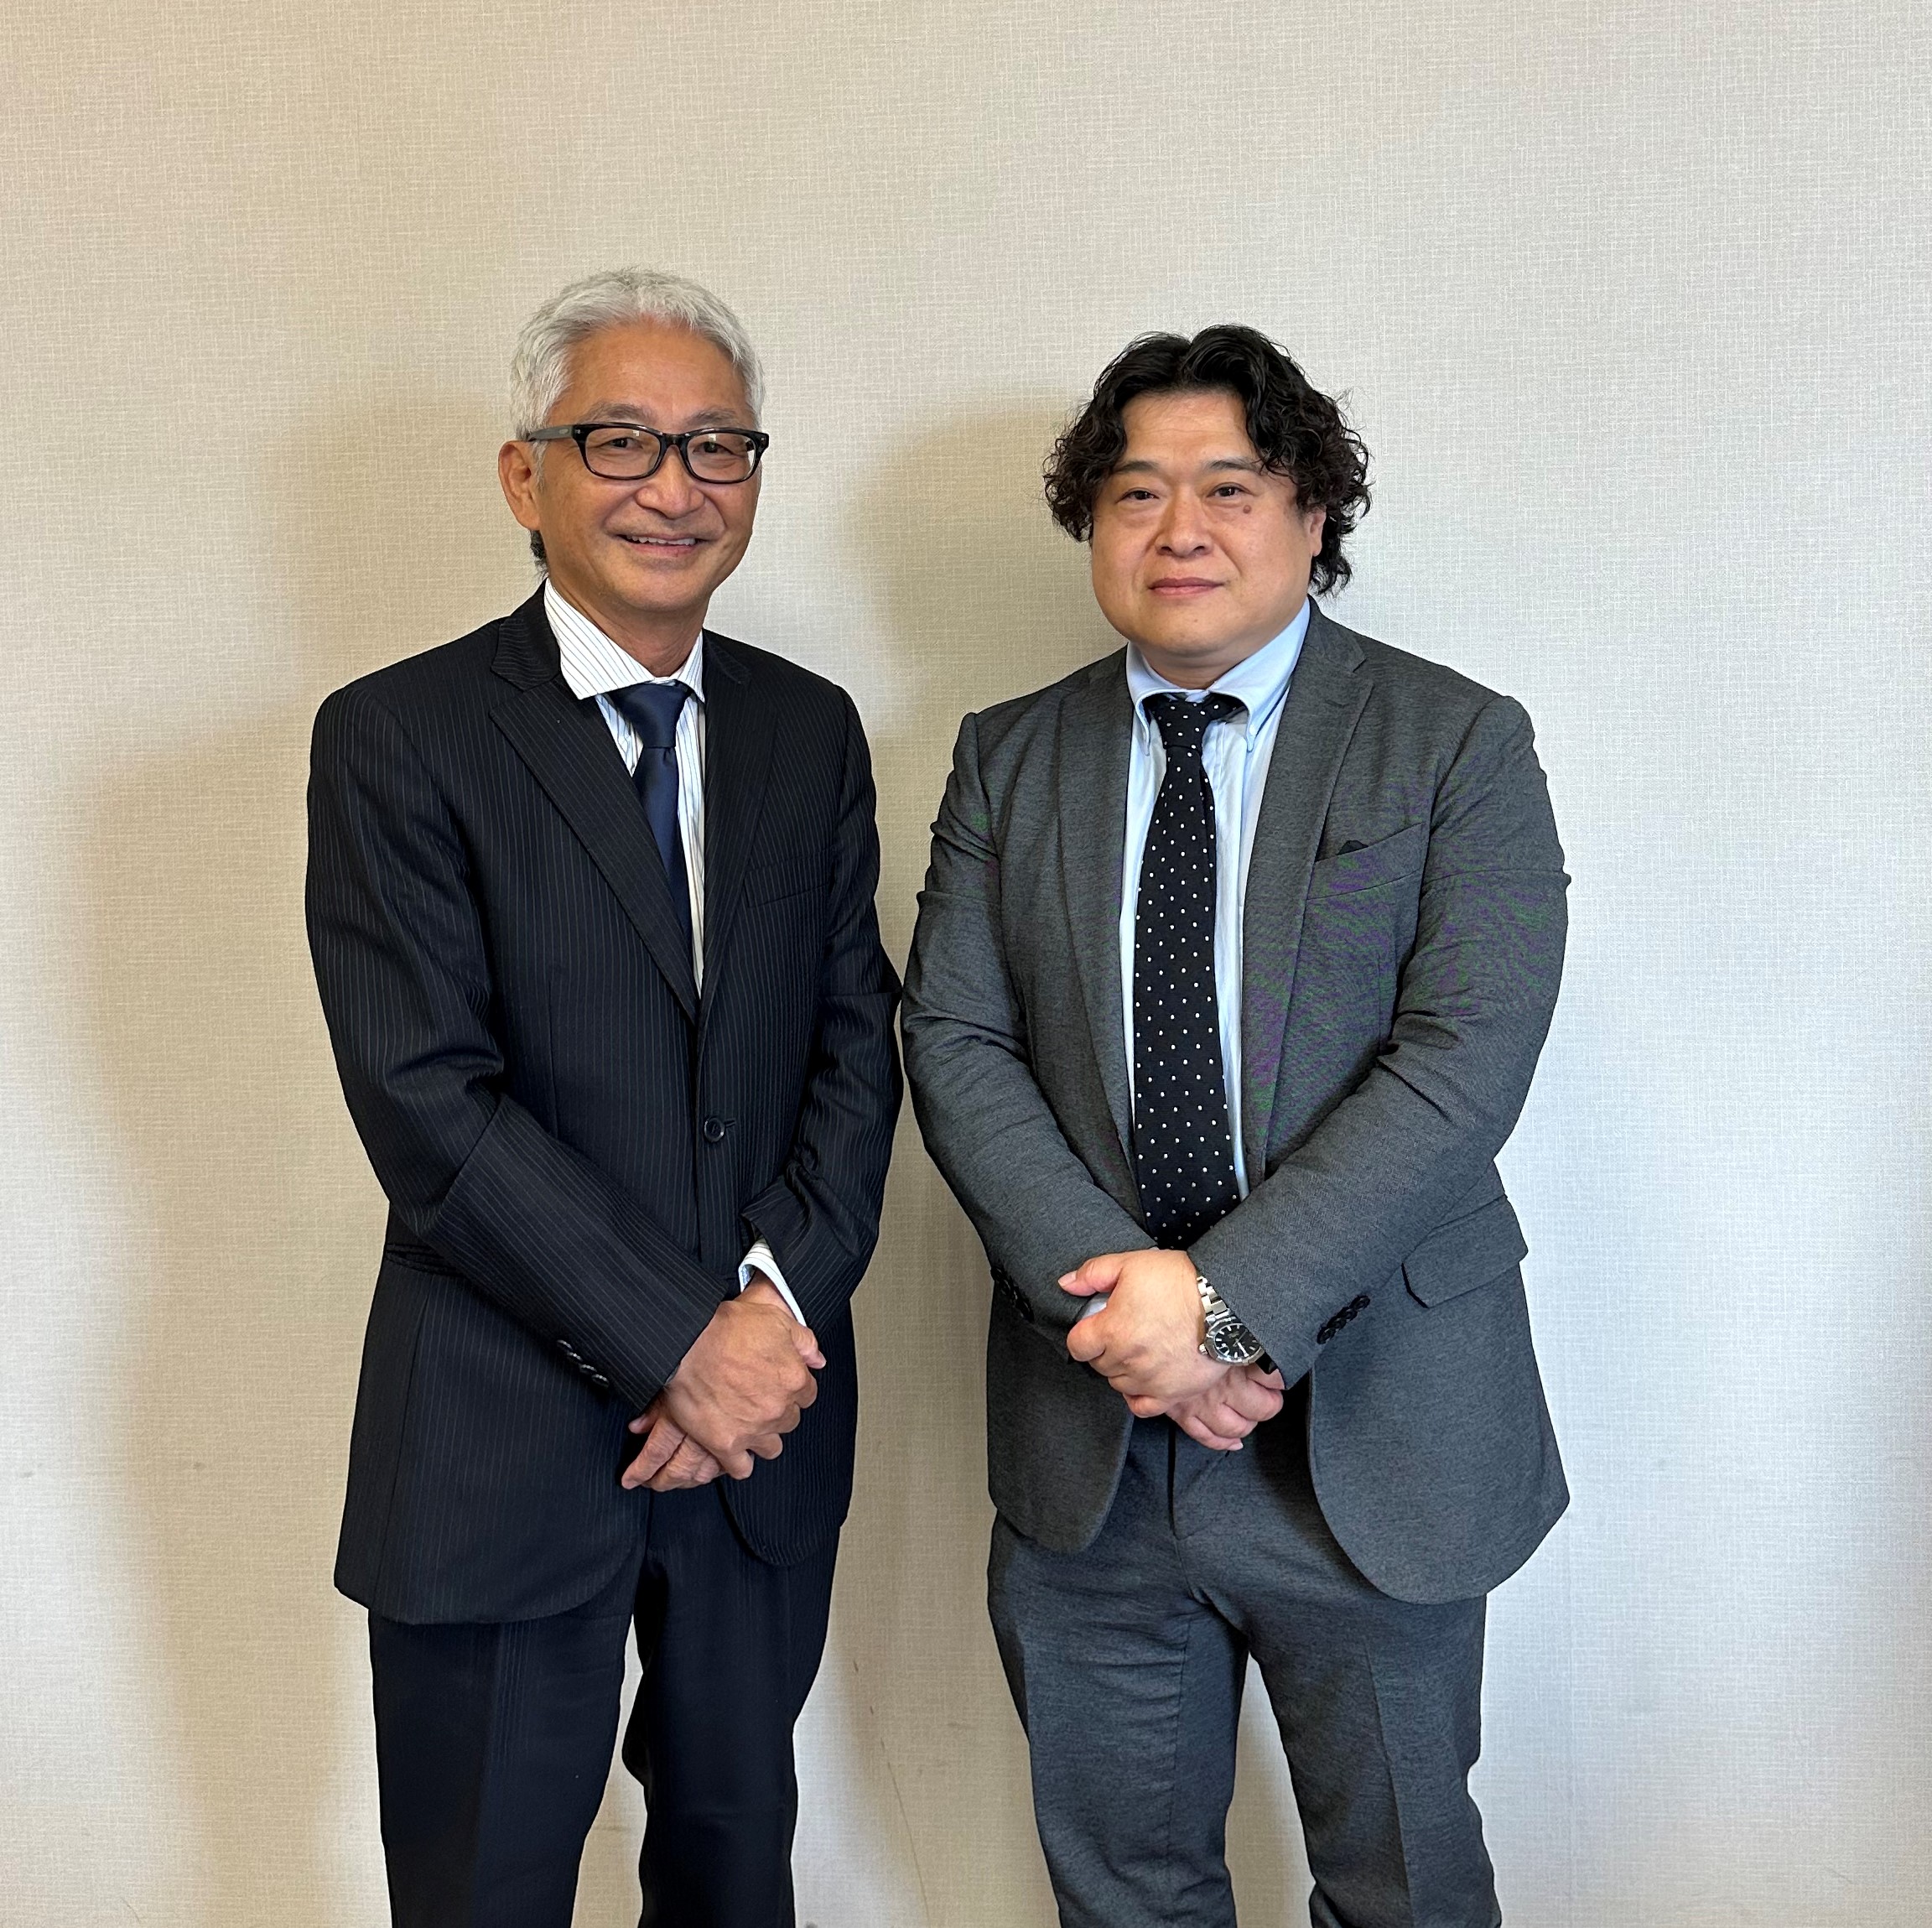 救急・災害医療のエキスパート　鳥取大学医学部附属病院　上田敬博教授と本学雨海教授が対談しました。